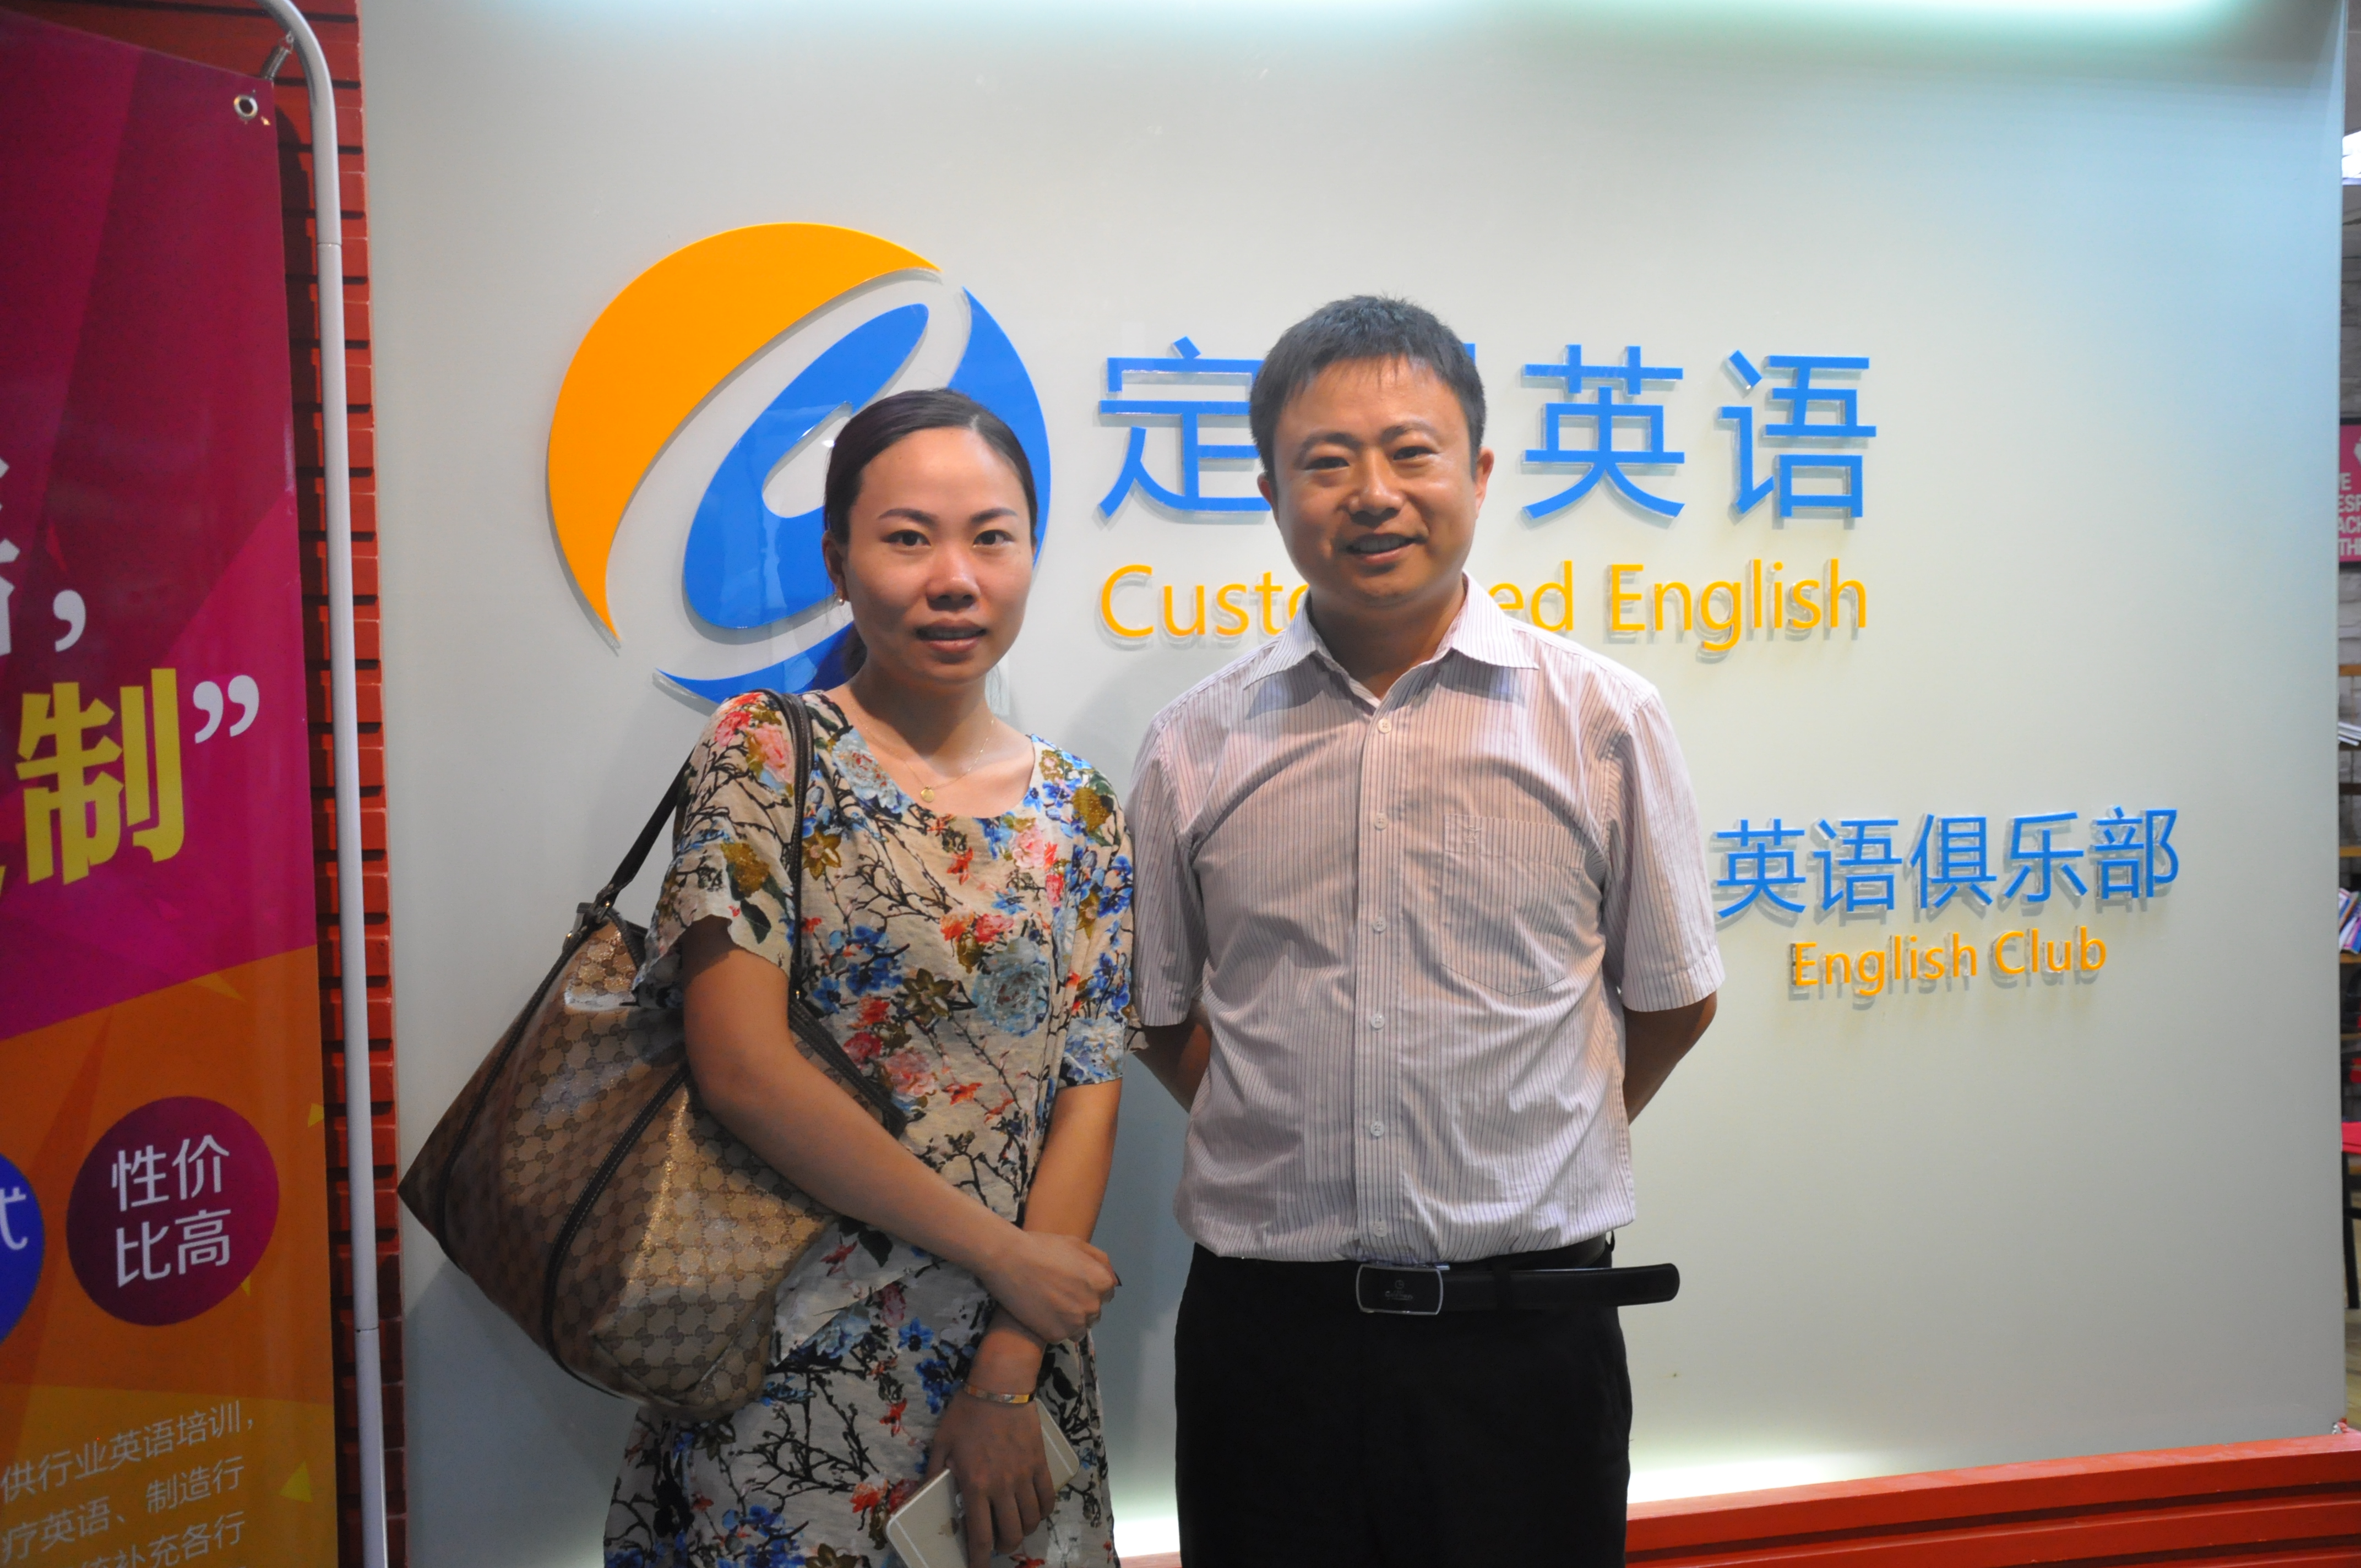 你们谁了解深圳龙华英语学习班呢?